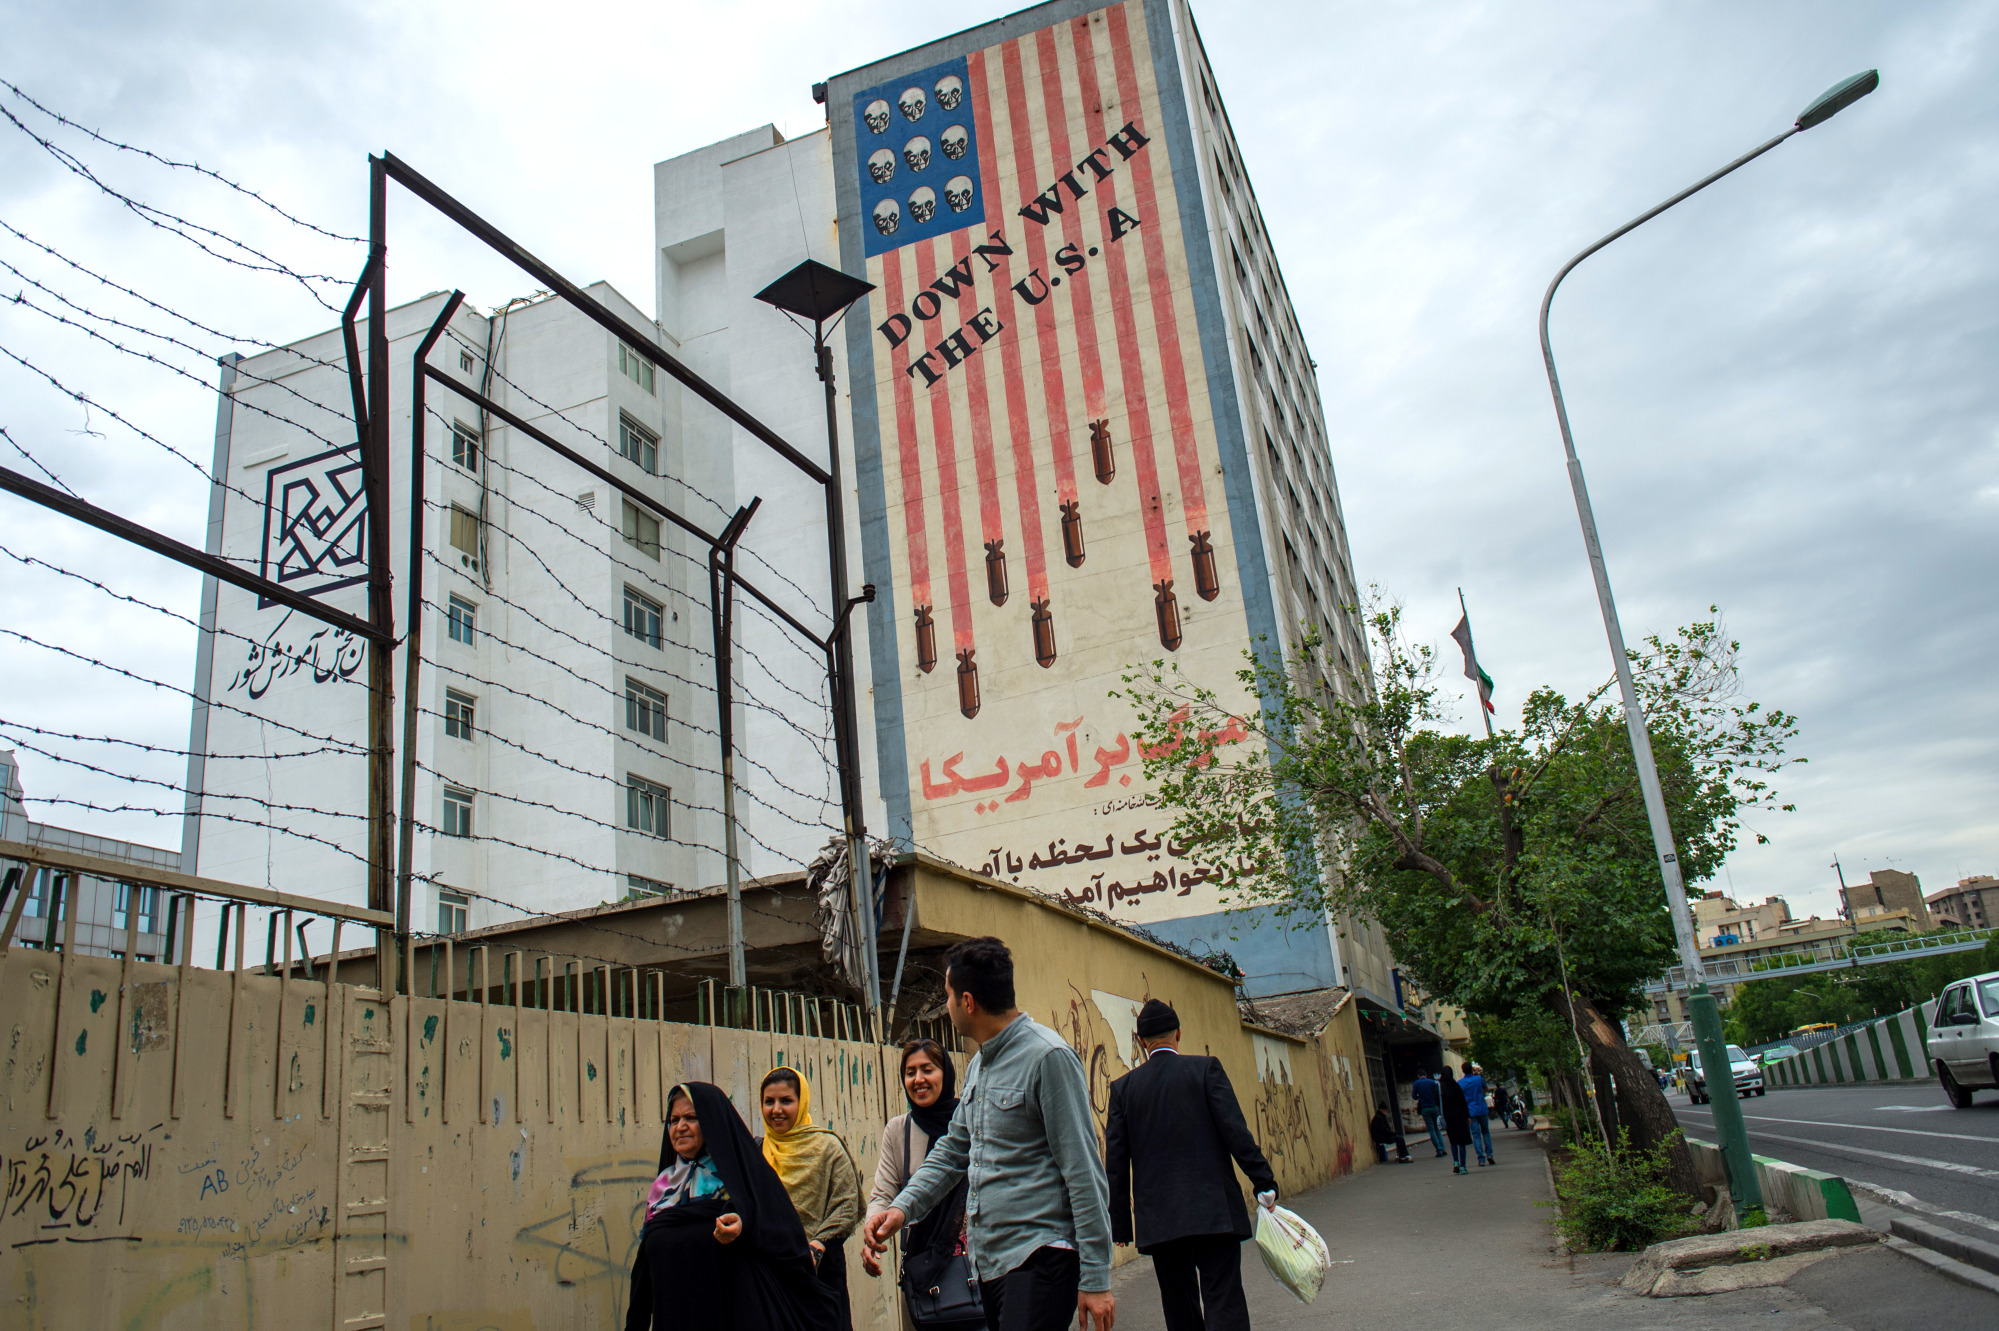 Pedestrians&nbsp;walk by a mural&nbsp;in Tehran.